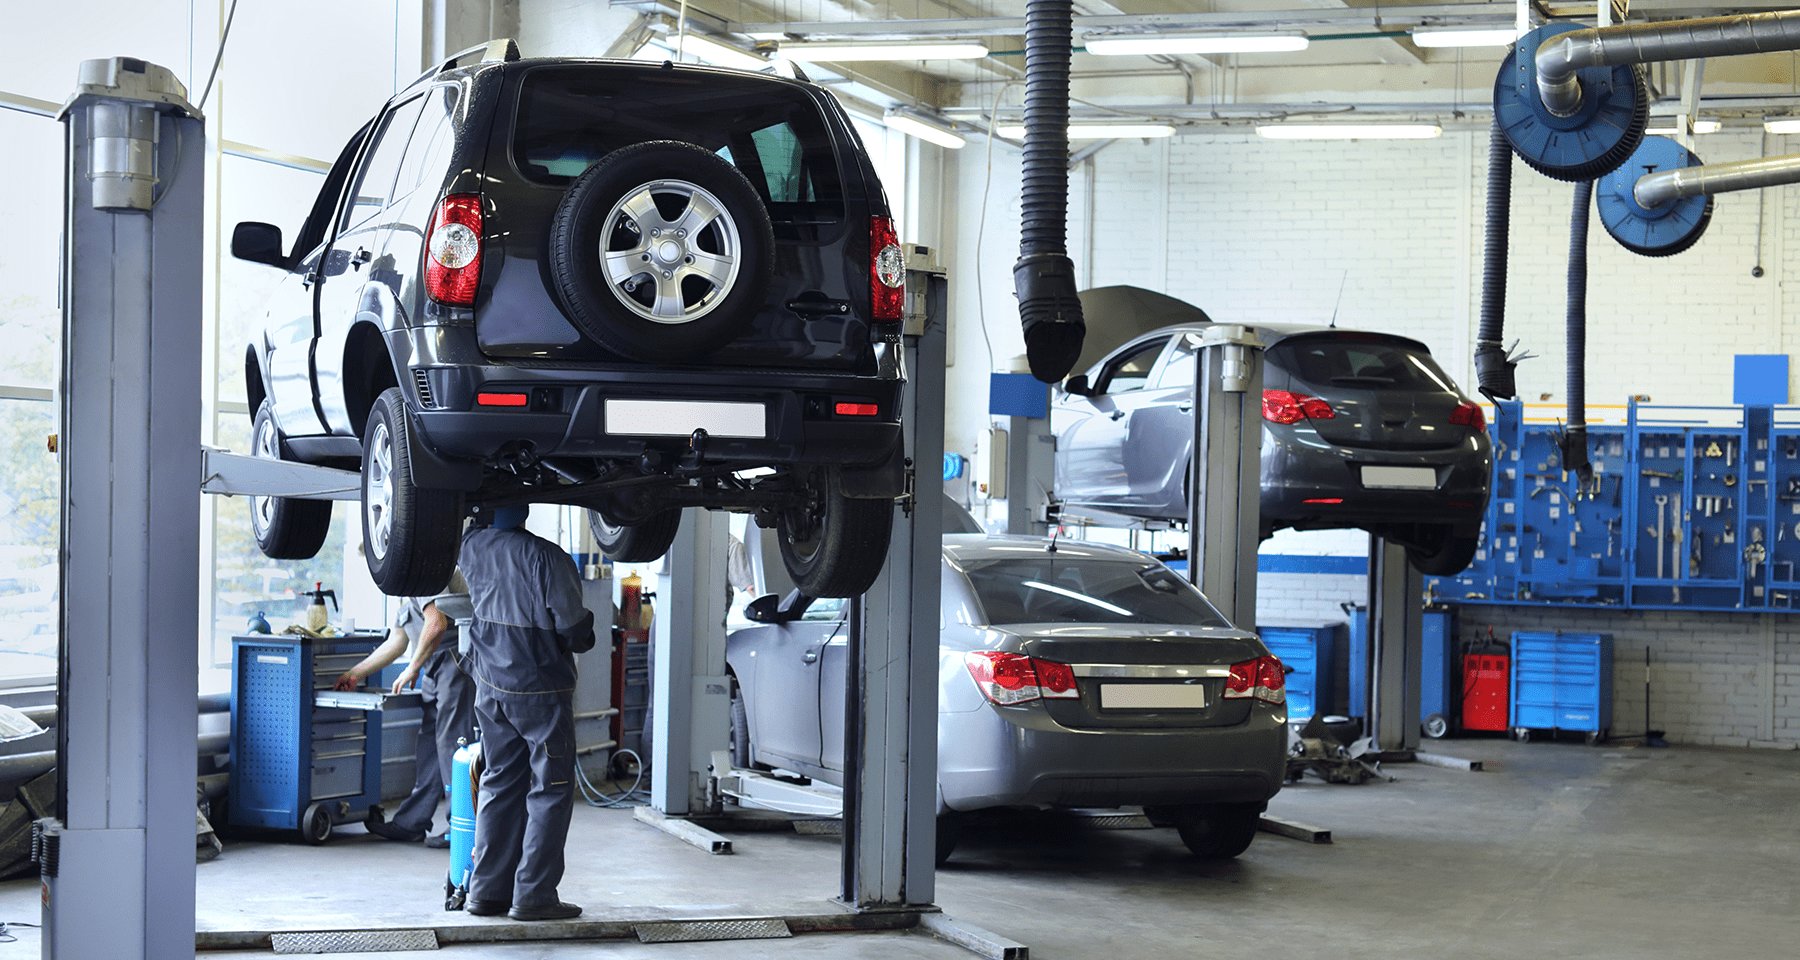 Запчасти для ремонта автомобиля найти все сложнее. Как сейчас урегулируют страховые случаи по каско?